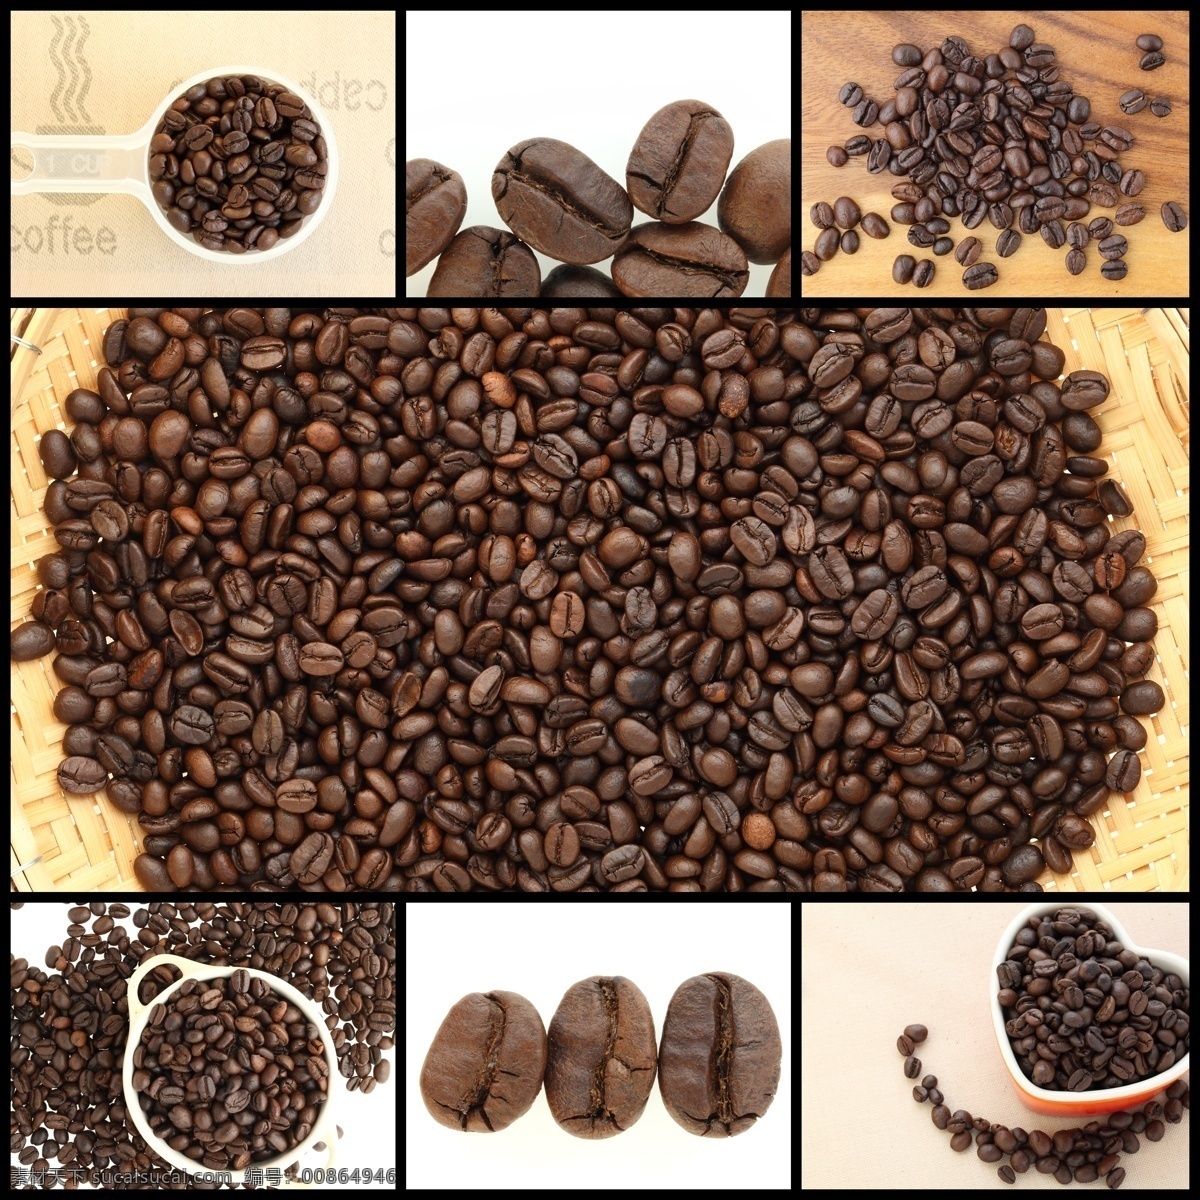 咖啡 杯子 果 咖啡杯子 咖啡豆 咖啡原料 咖啡果 其他类别 餐饮美食 黑色